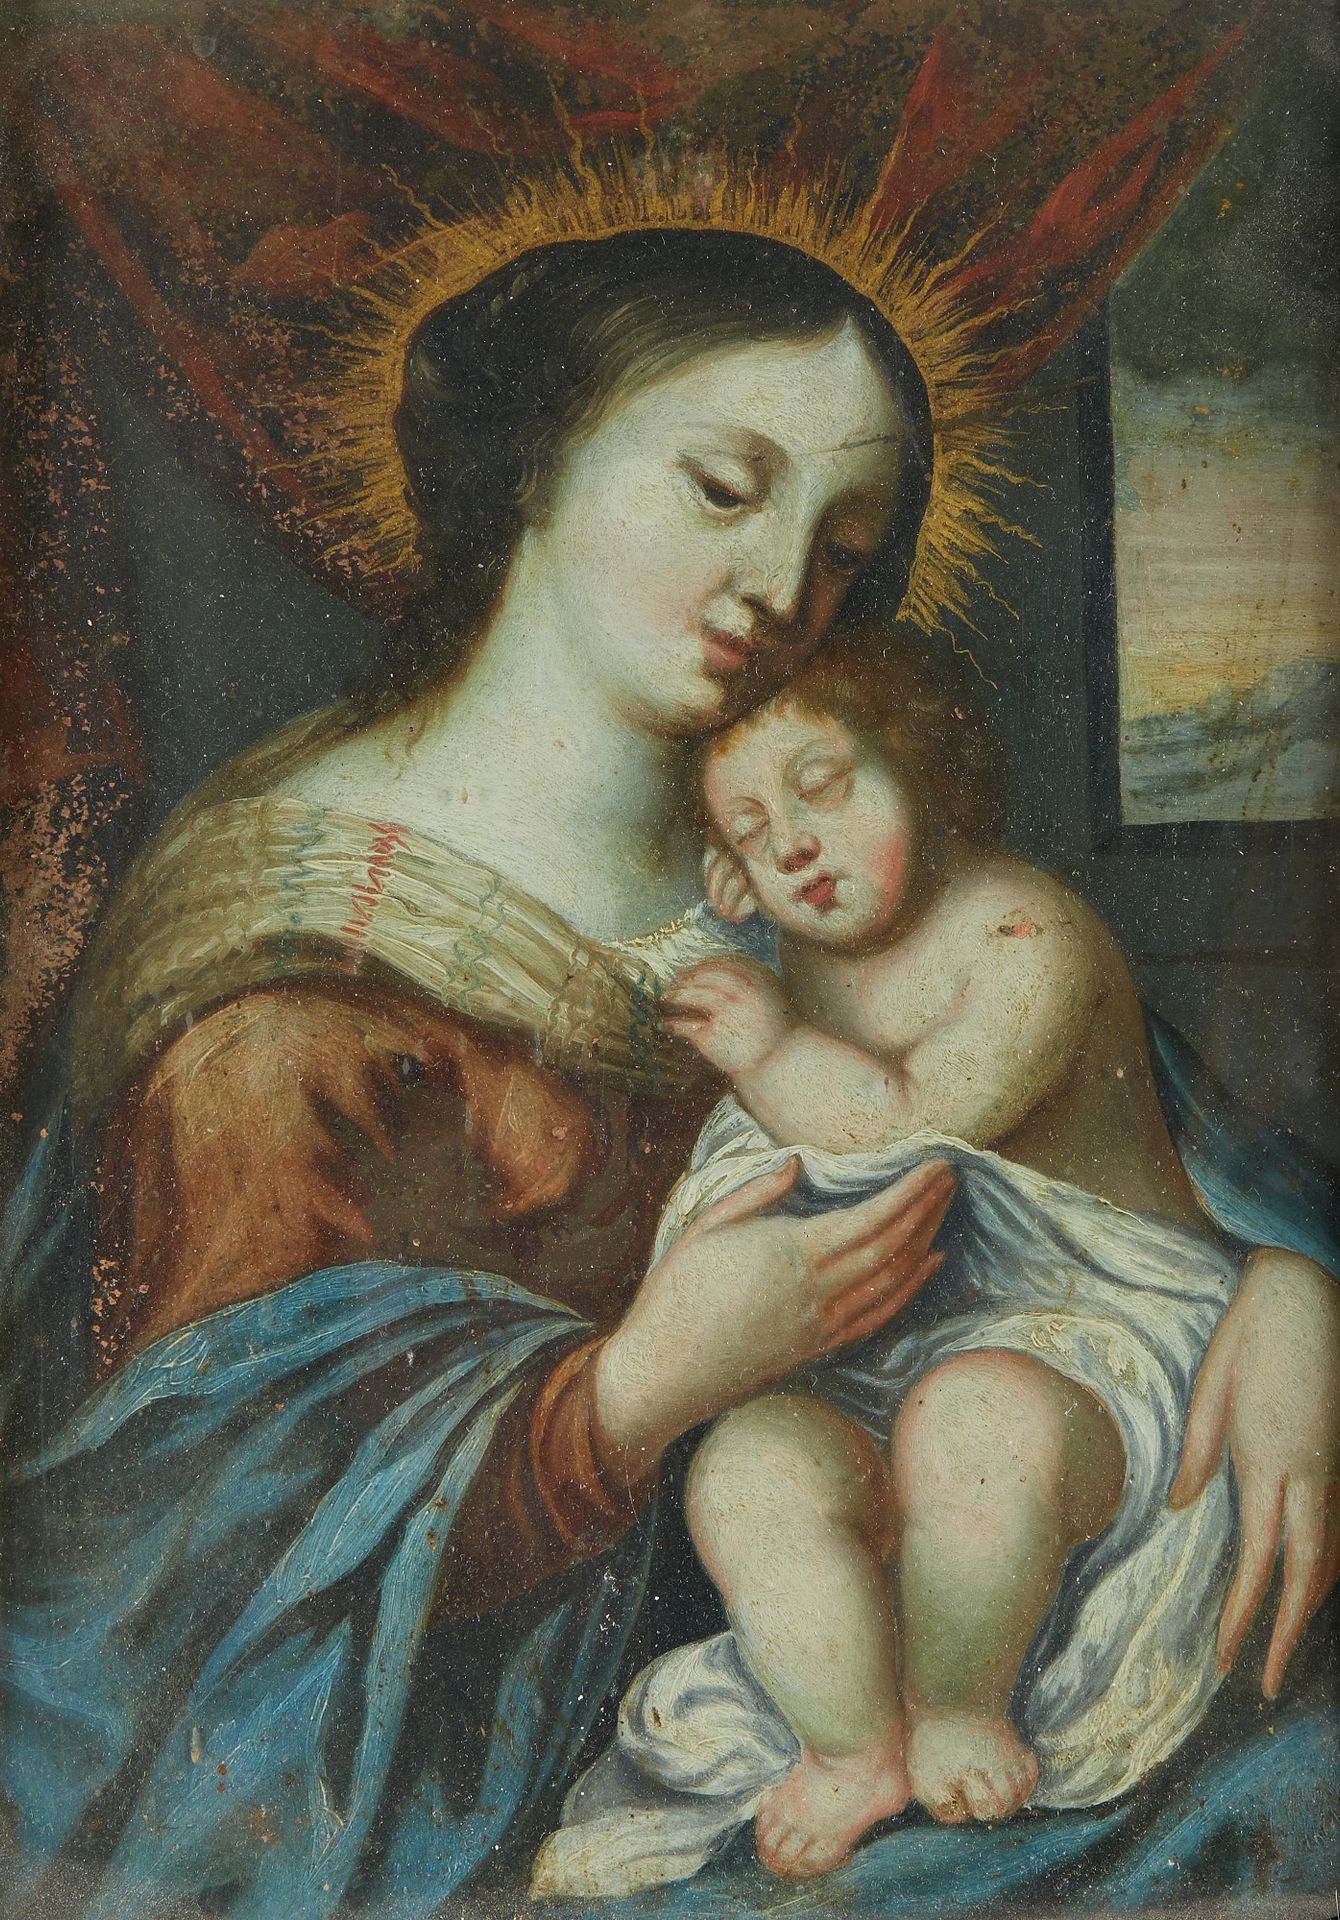 Null Escuela francesa del siglo XVII

La Virgen y el Niño

Cobre.

22 x 16 cm.

&hellip;